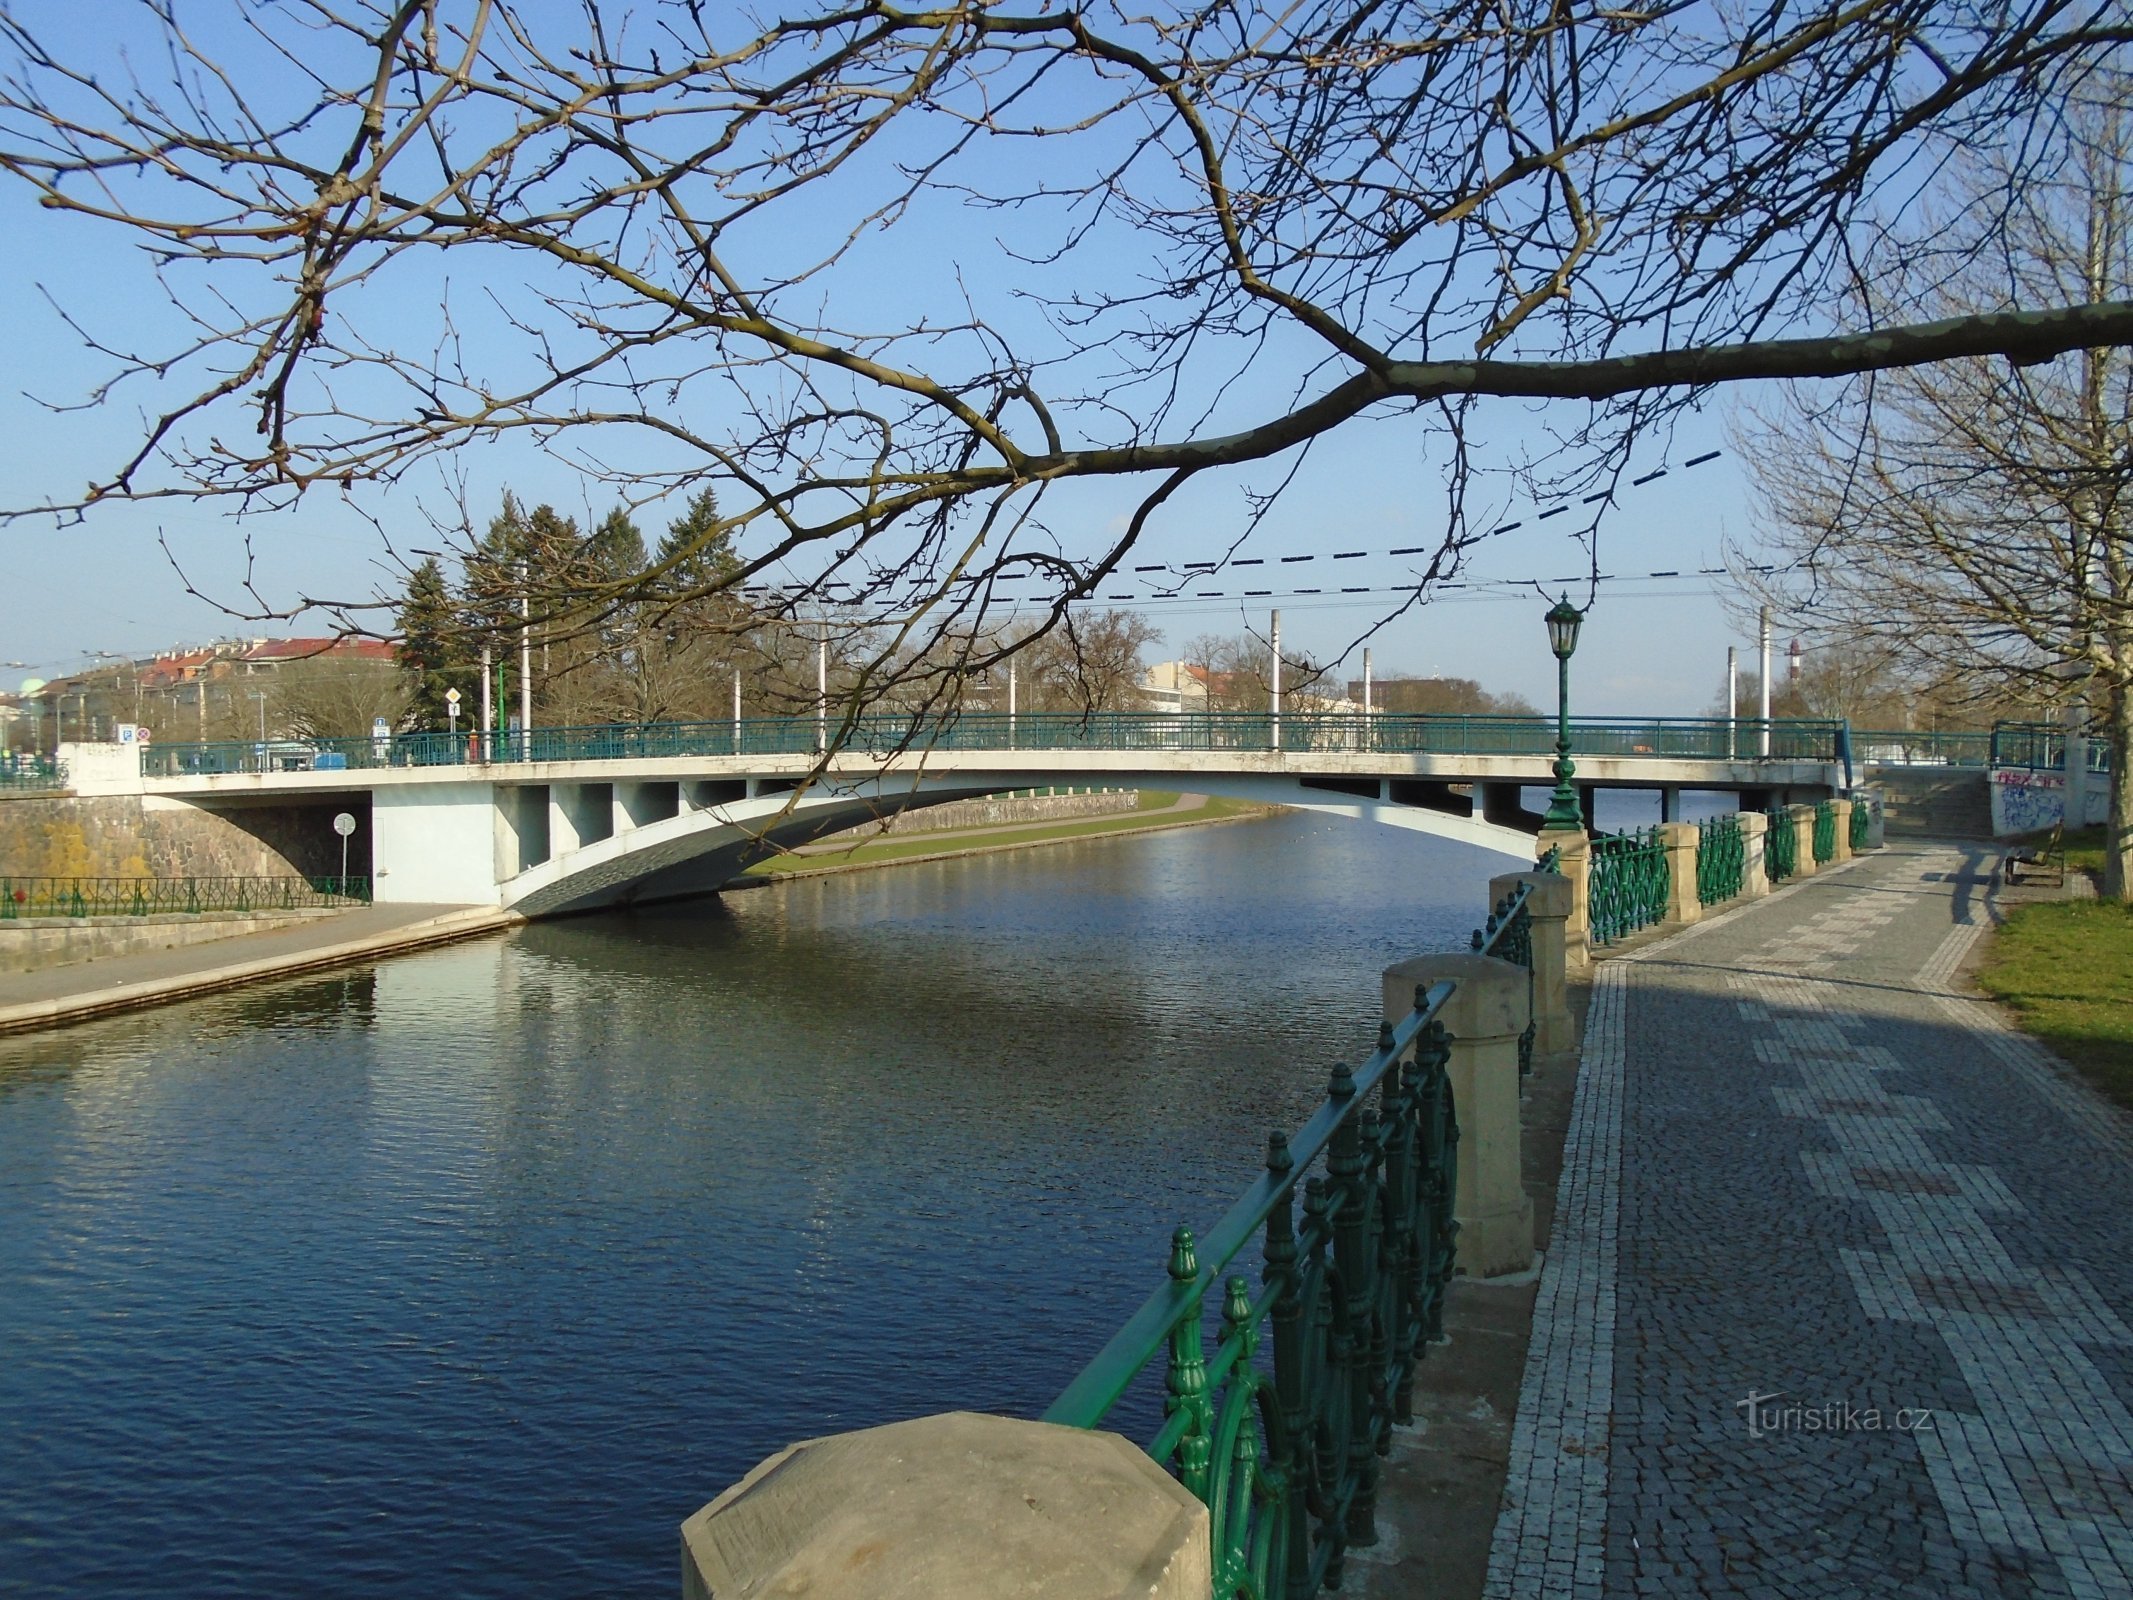 Tyršův most (Hradec Králové)